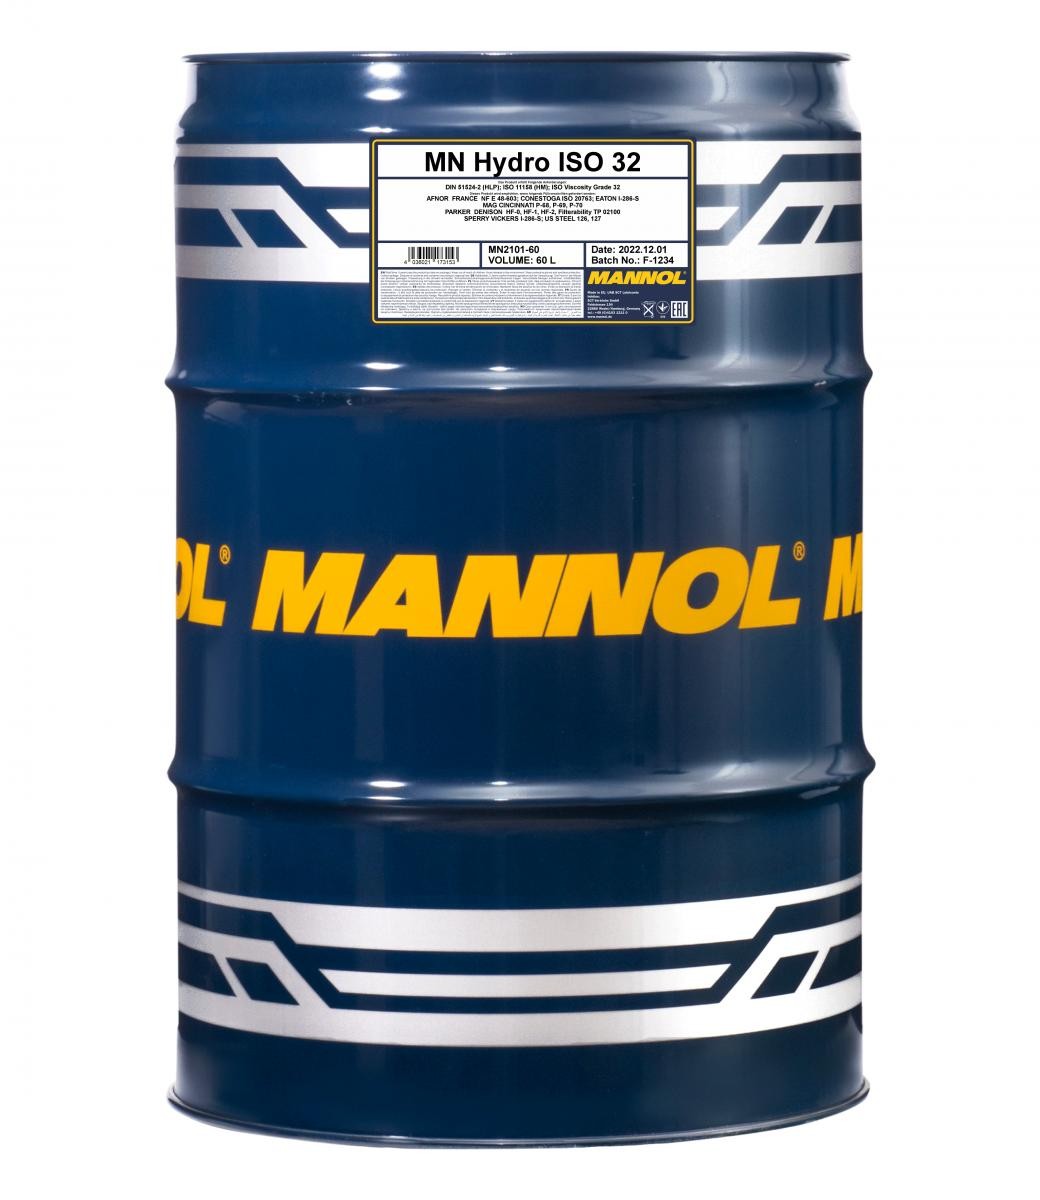 MANNOL Hydro ISO 32 Central Hydraulic Oil MN2101-60 buy